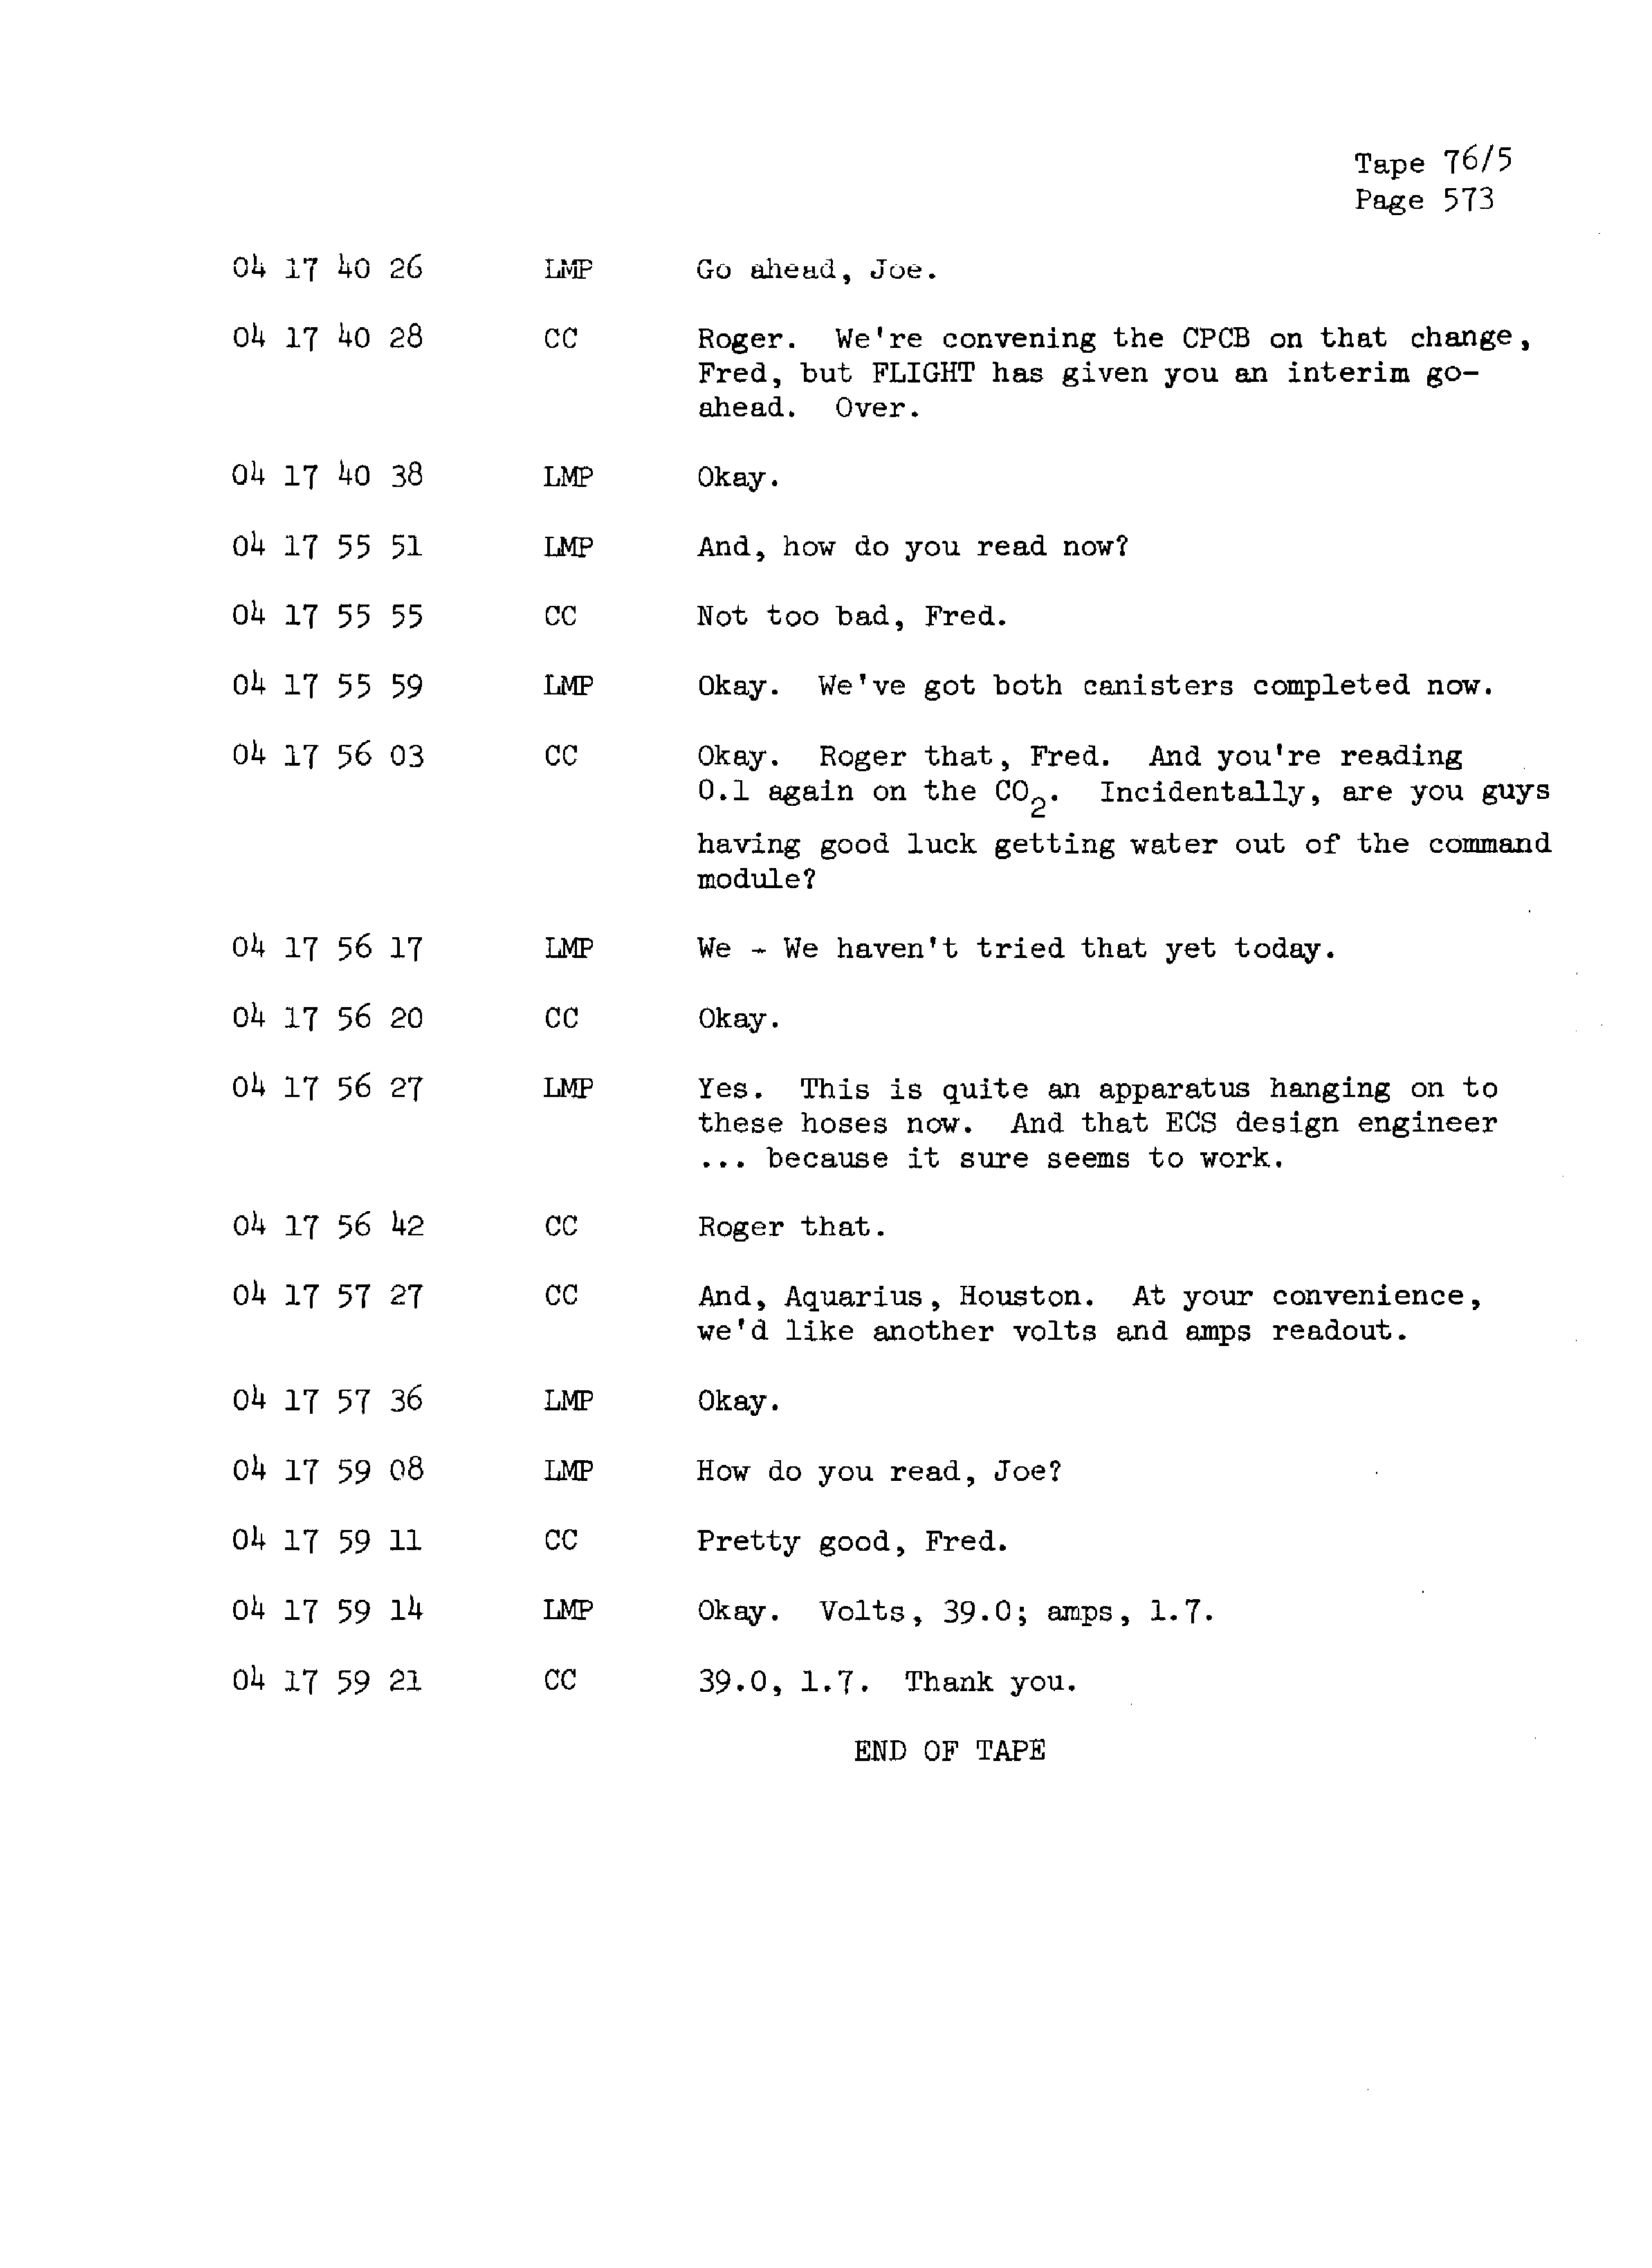 Page 580 of Apollo 13’s original transcript